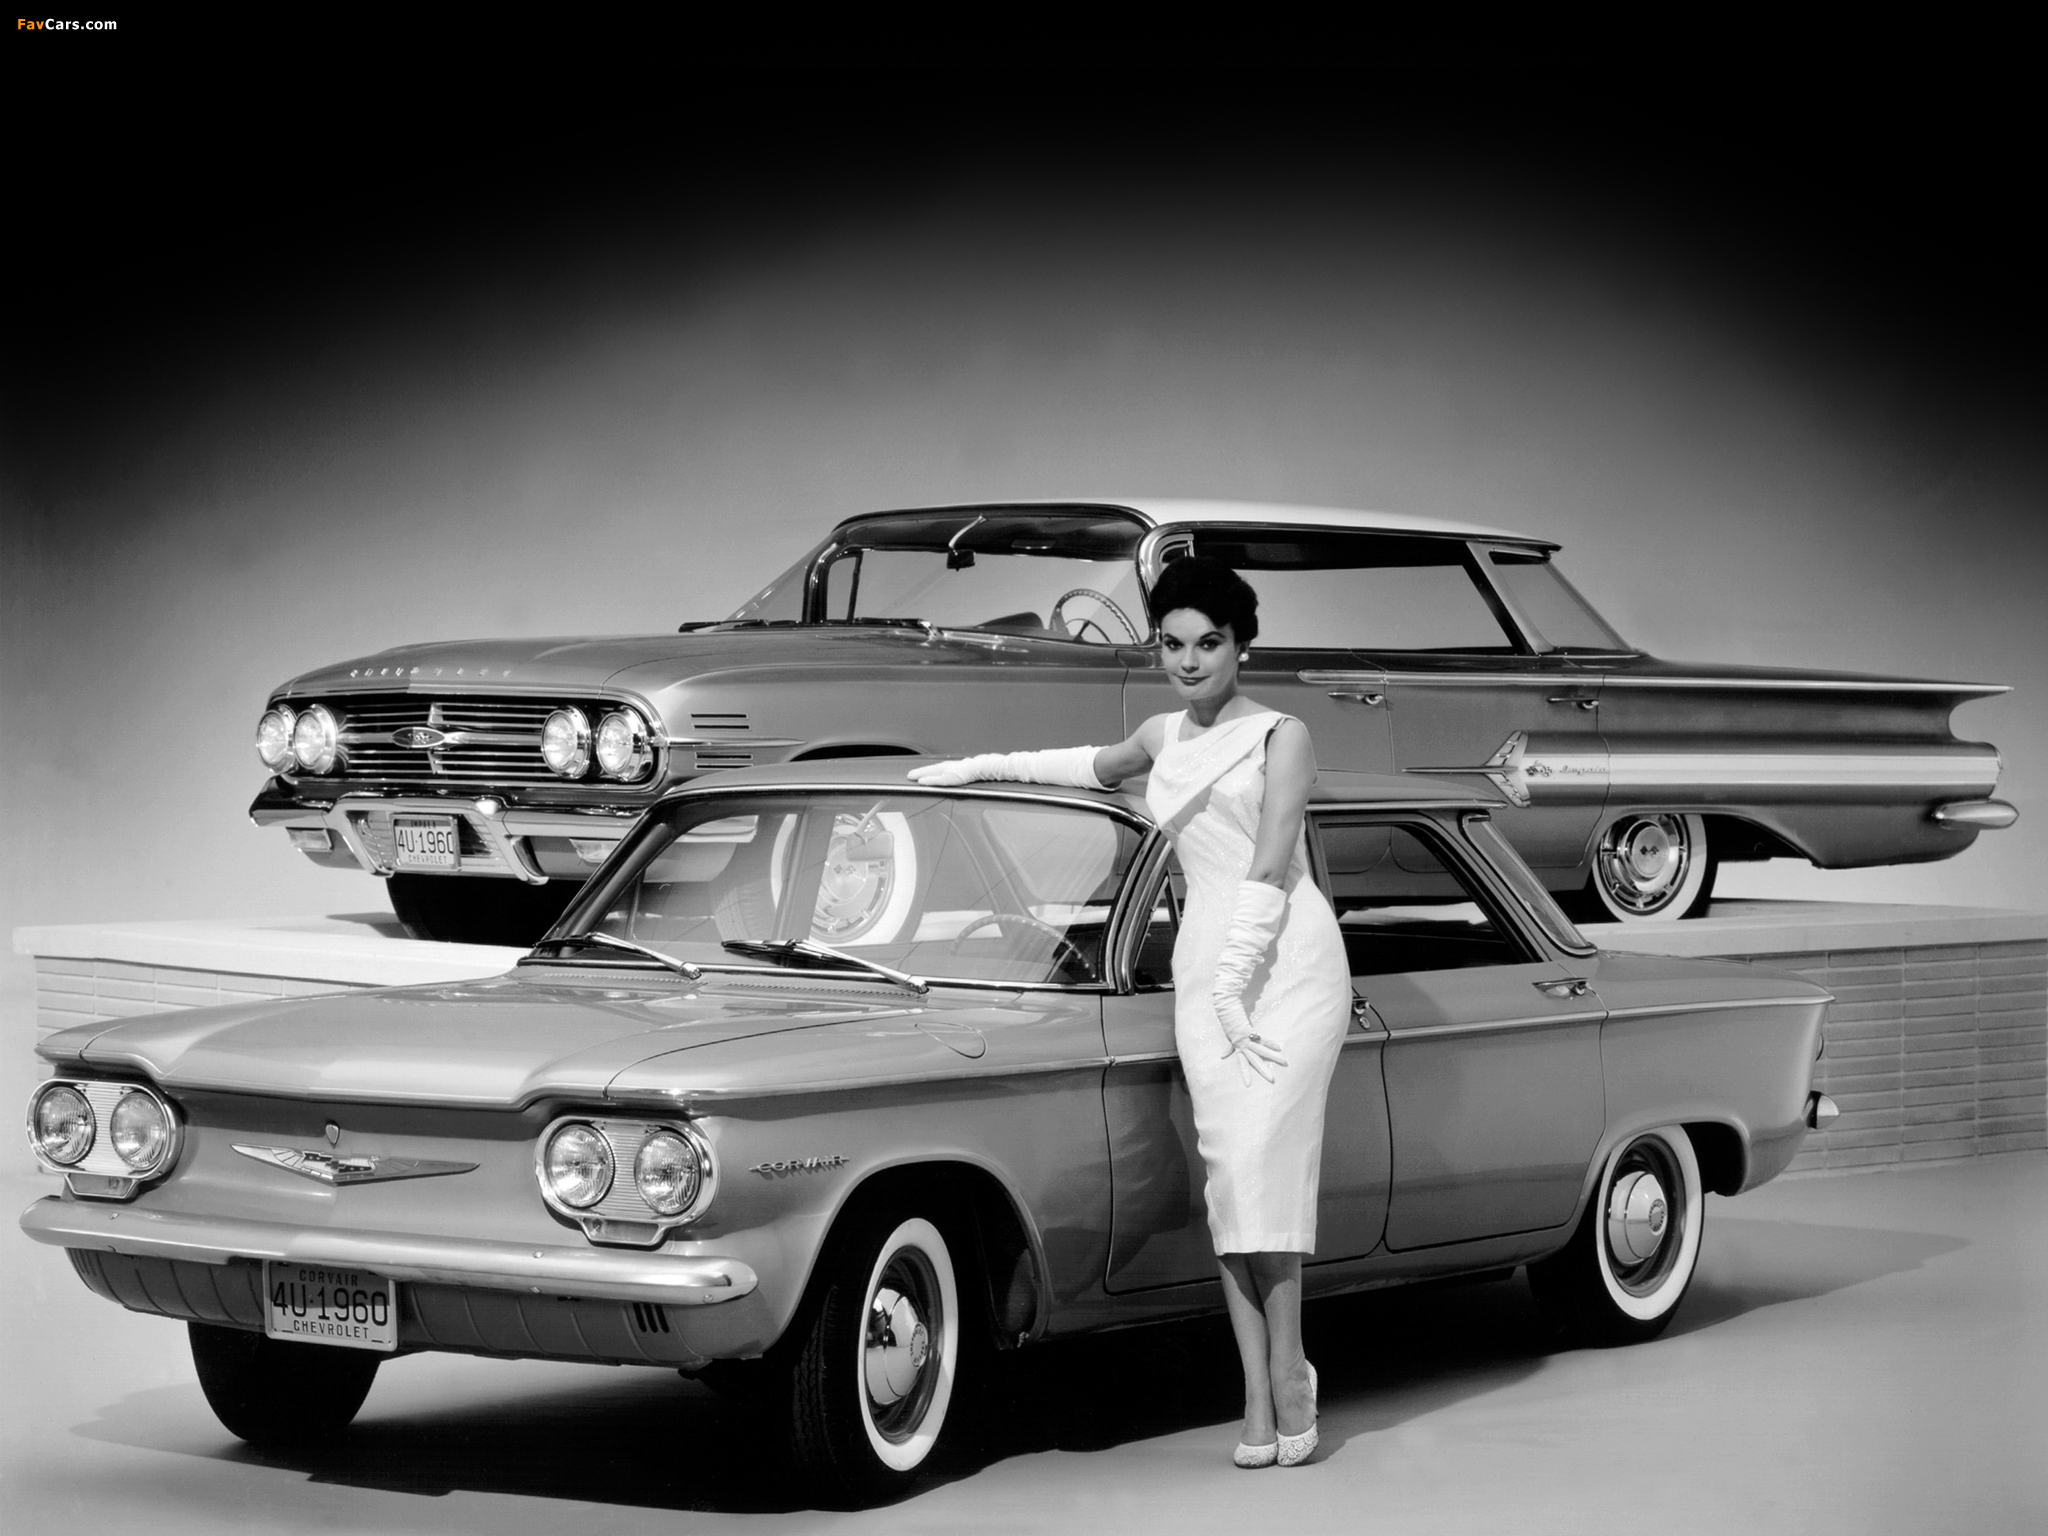 1960s sedans